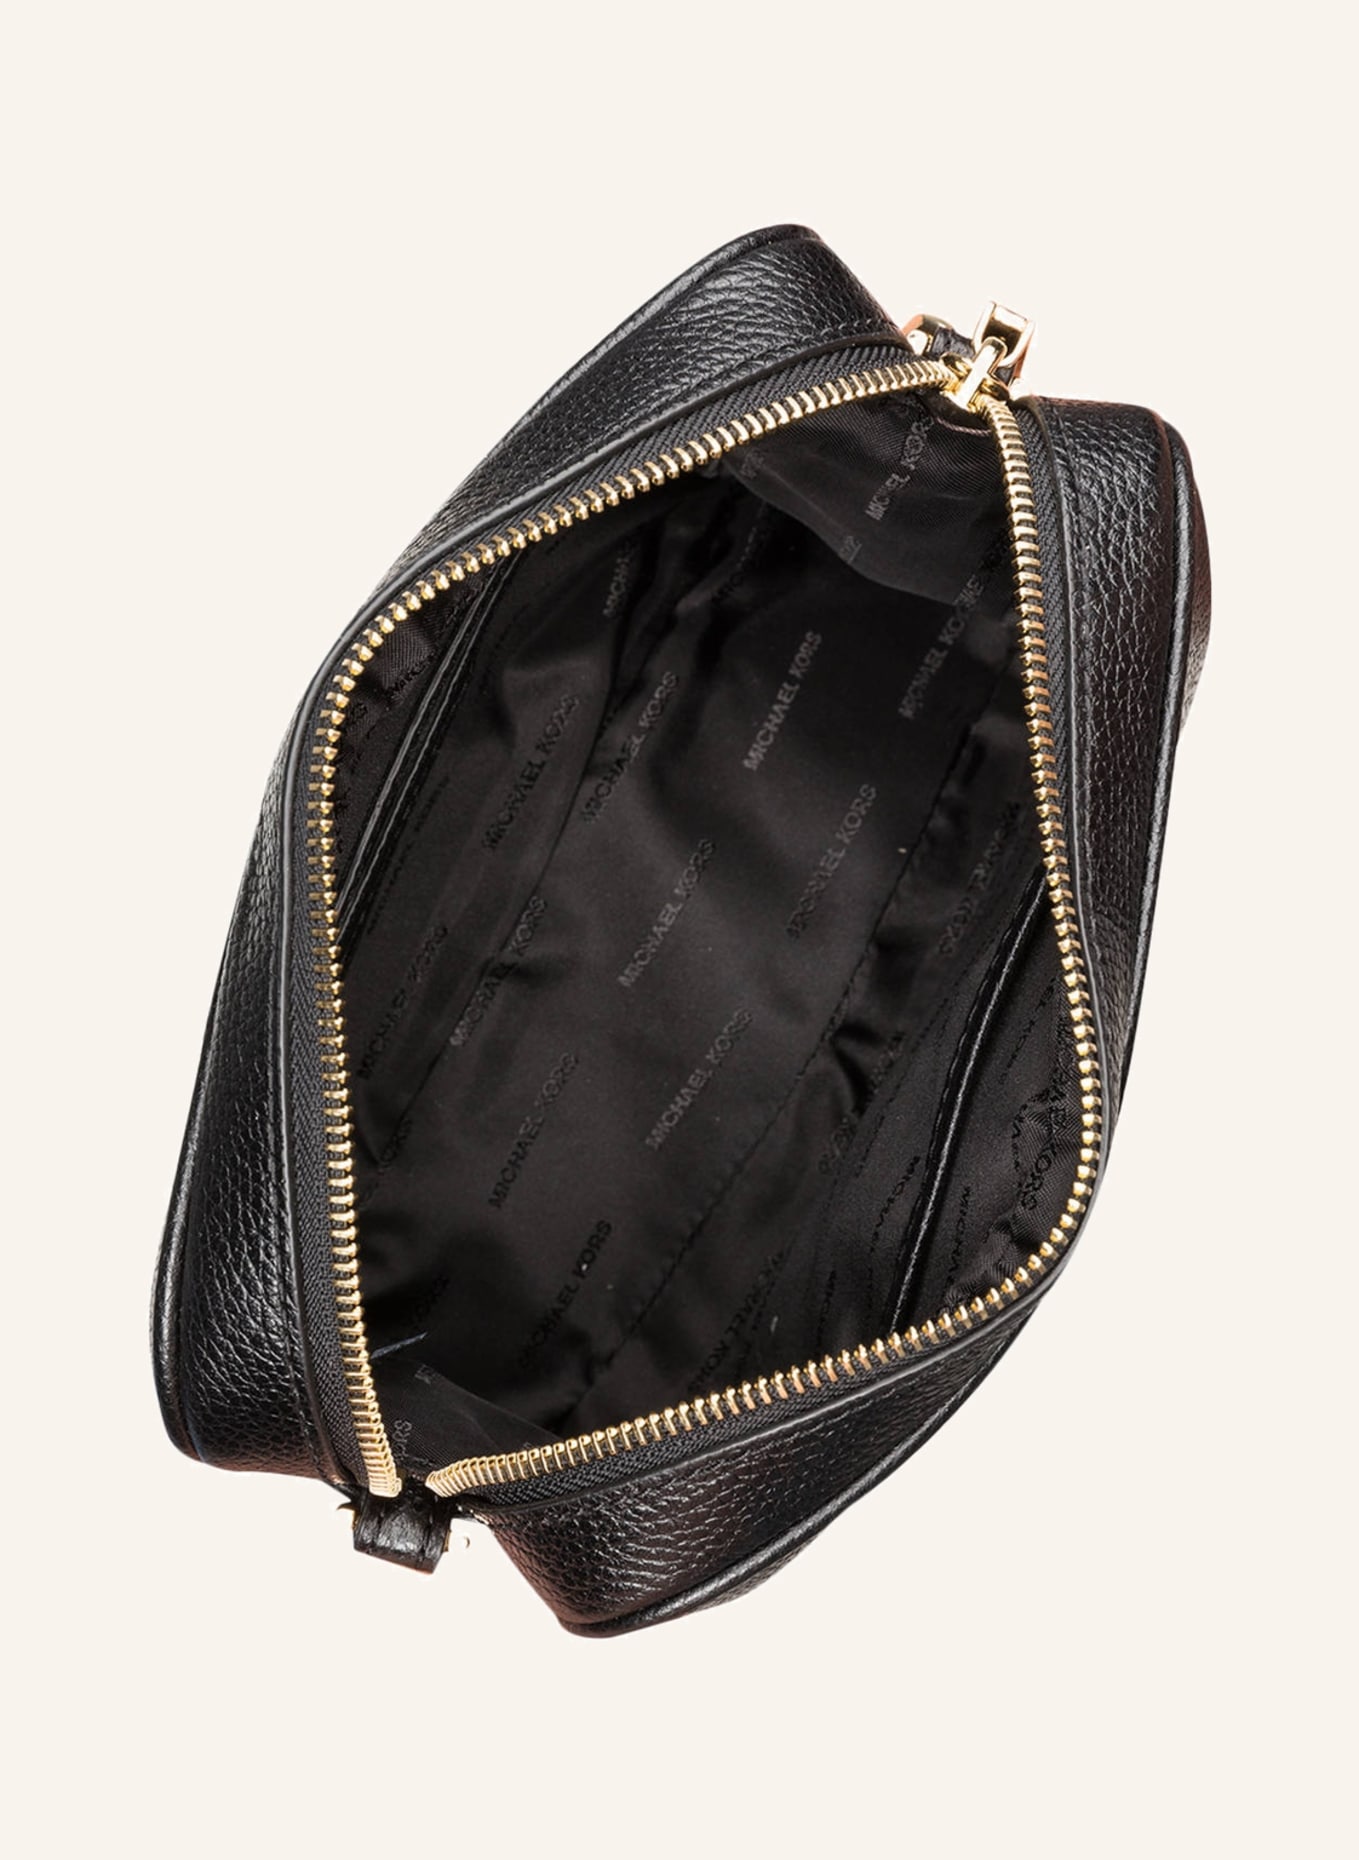 MICHAEL KORS Shoulder bag GINNY, Color: BLACK (Image 3)